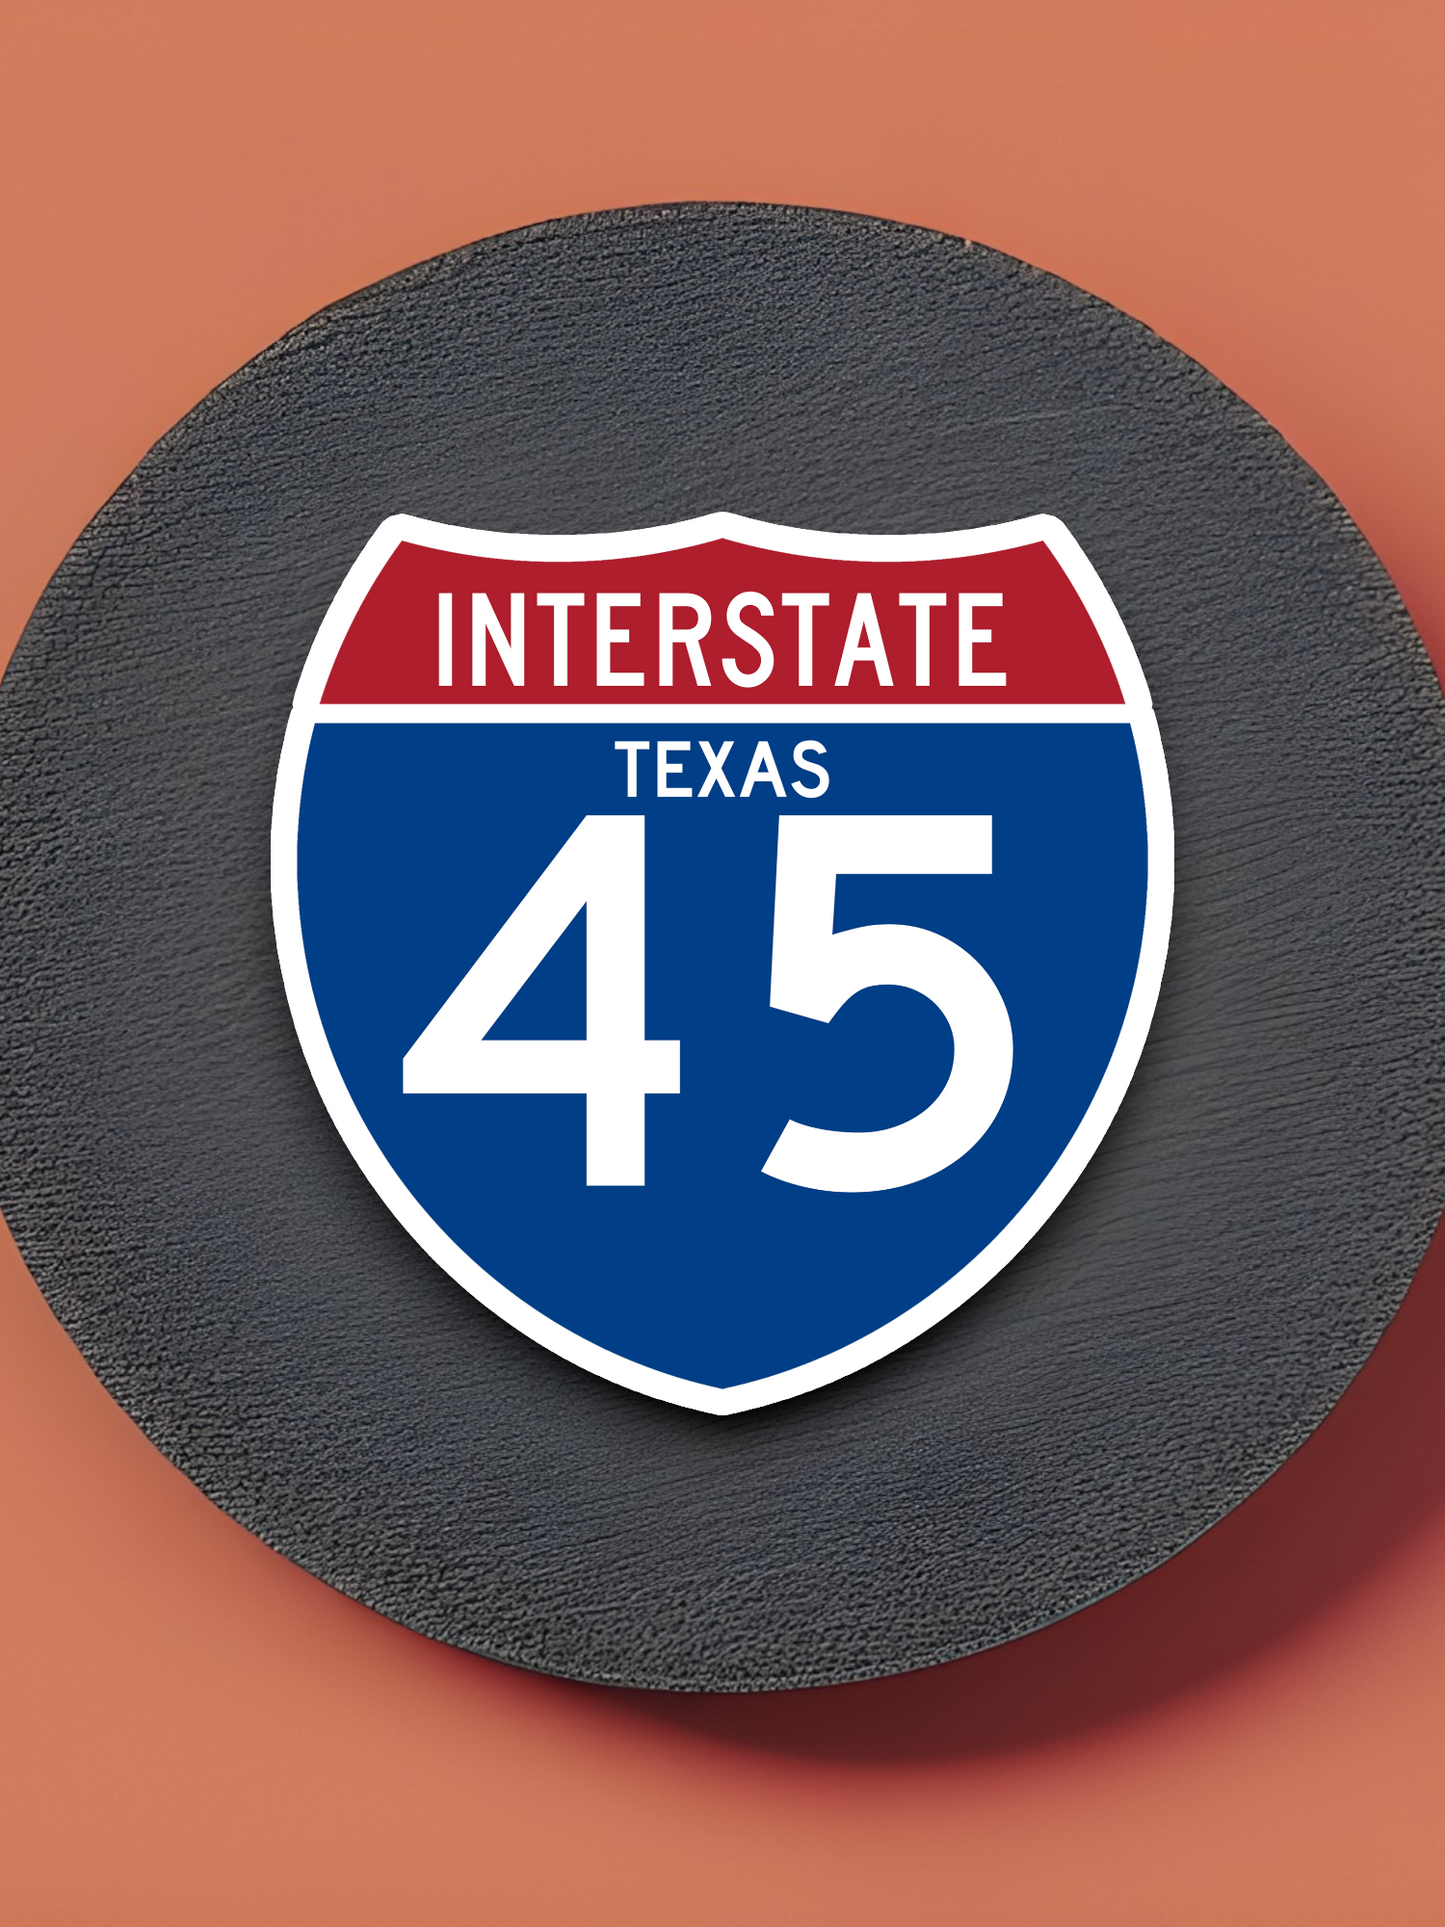 Interstate I-45 Texas Sticker